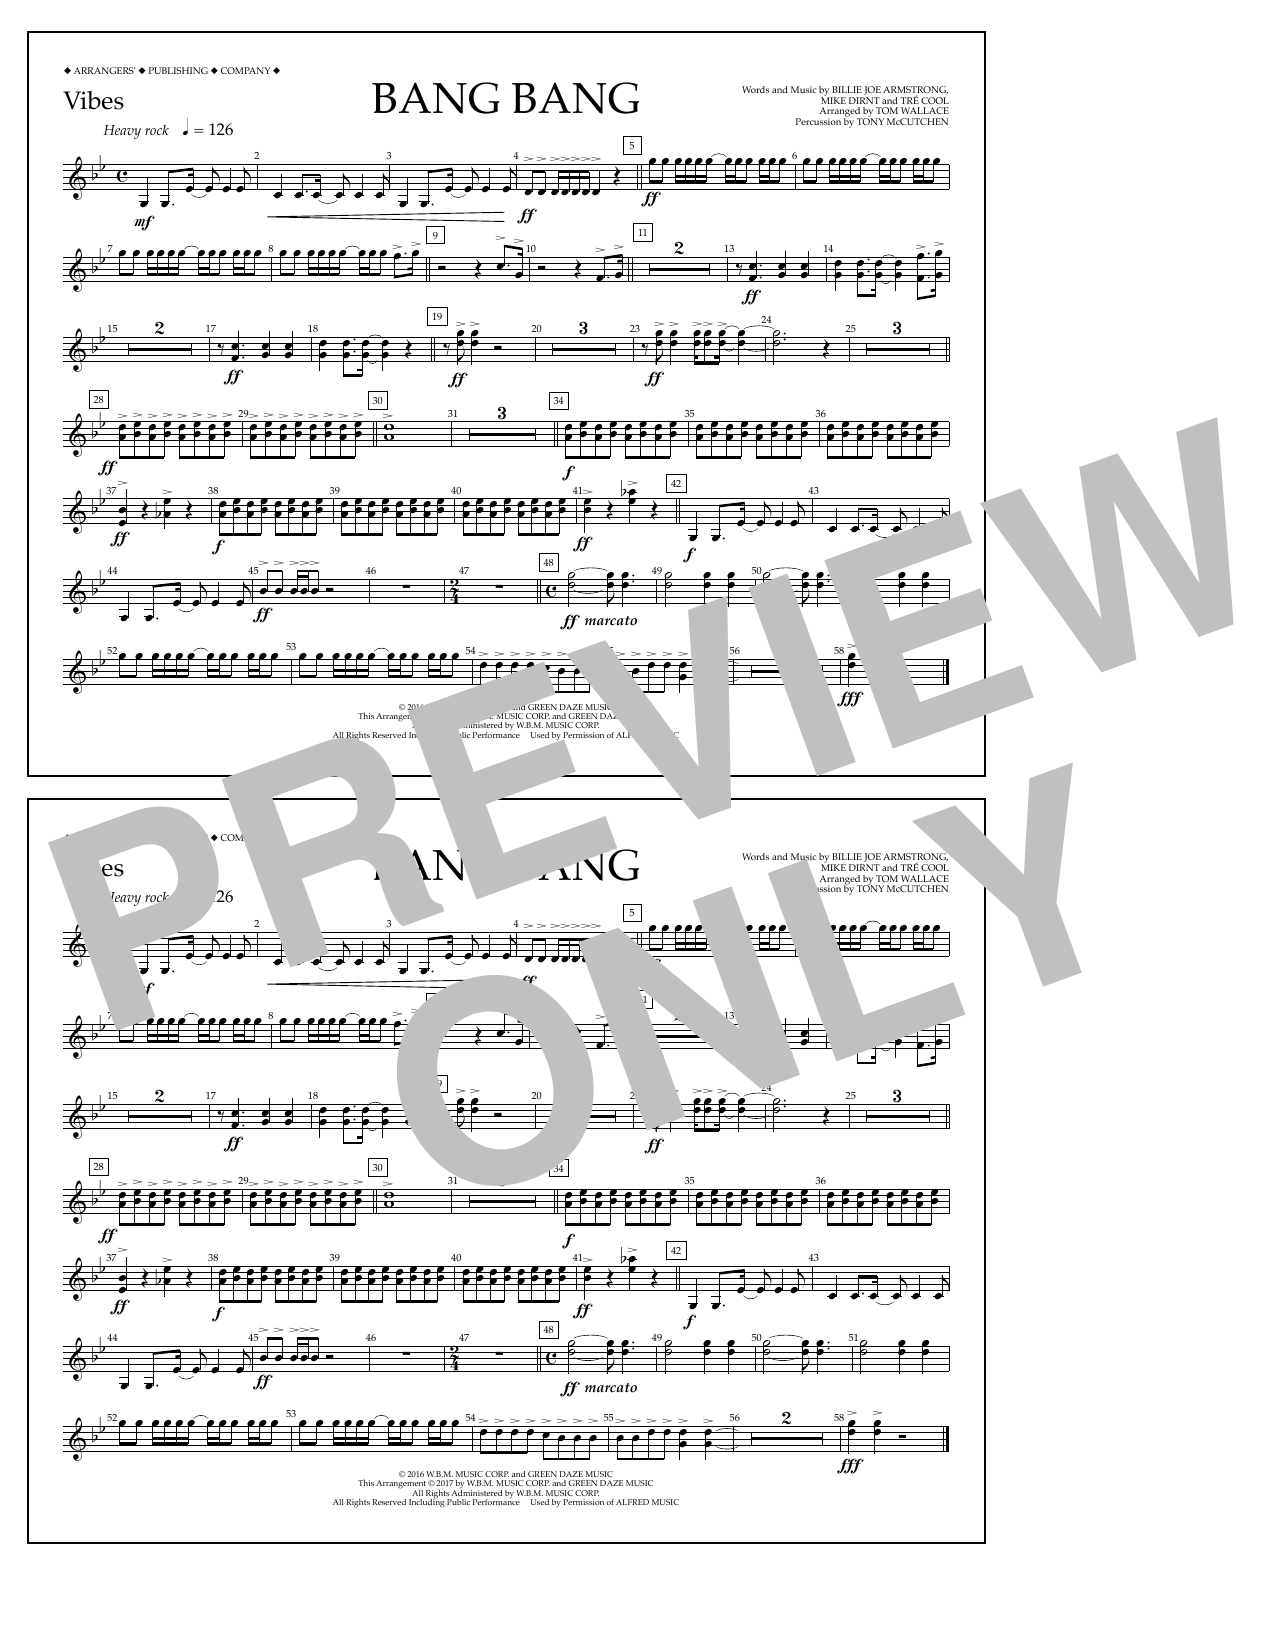 Tom Wallace Bang Bang - Vibes Sheet Music Notes & Chords for Marching Band - Download or Print PDF